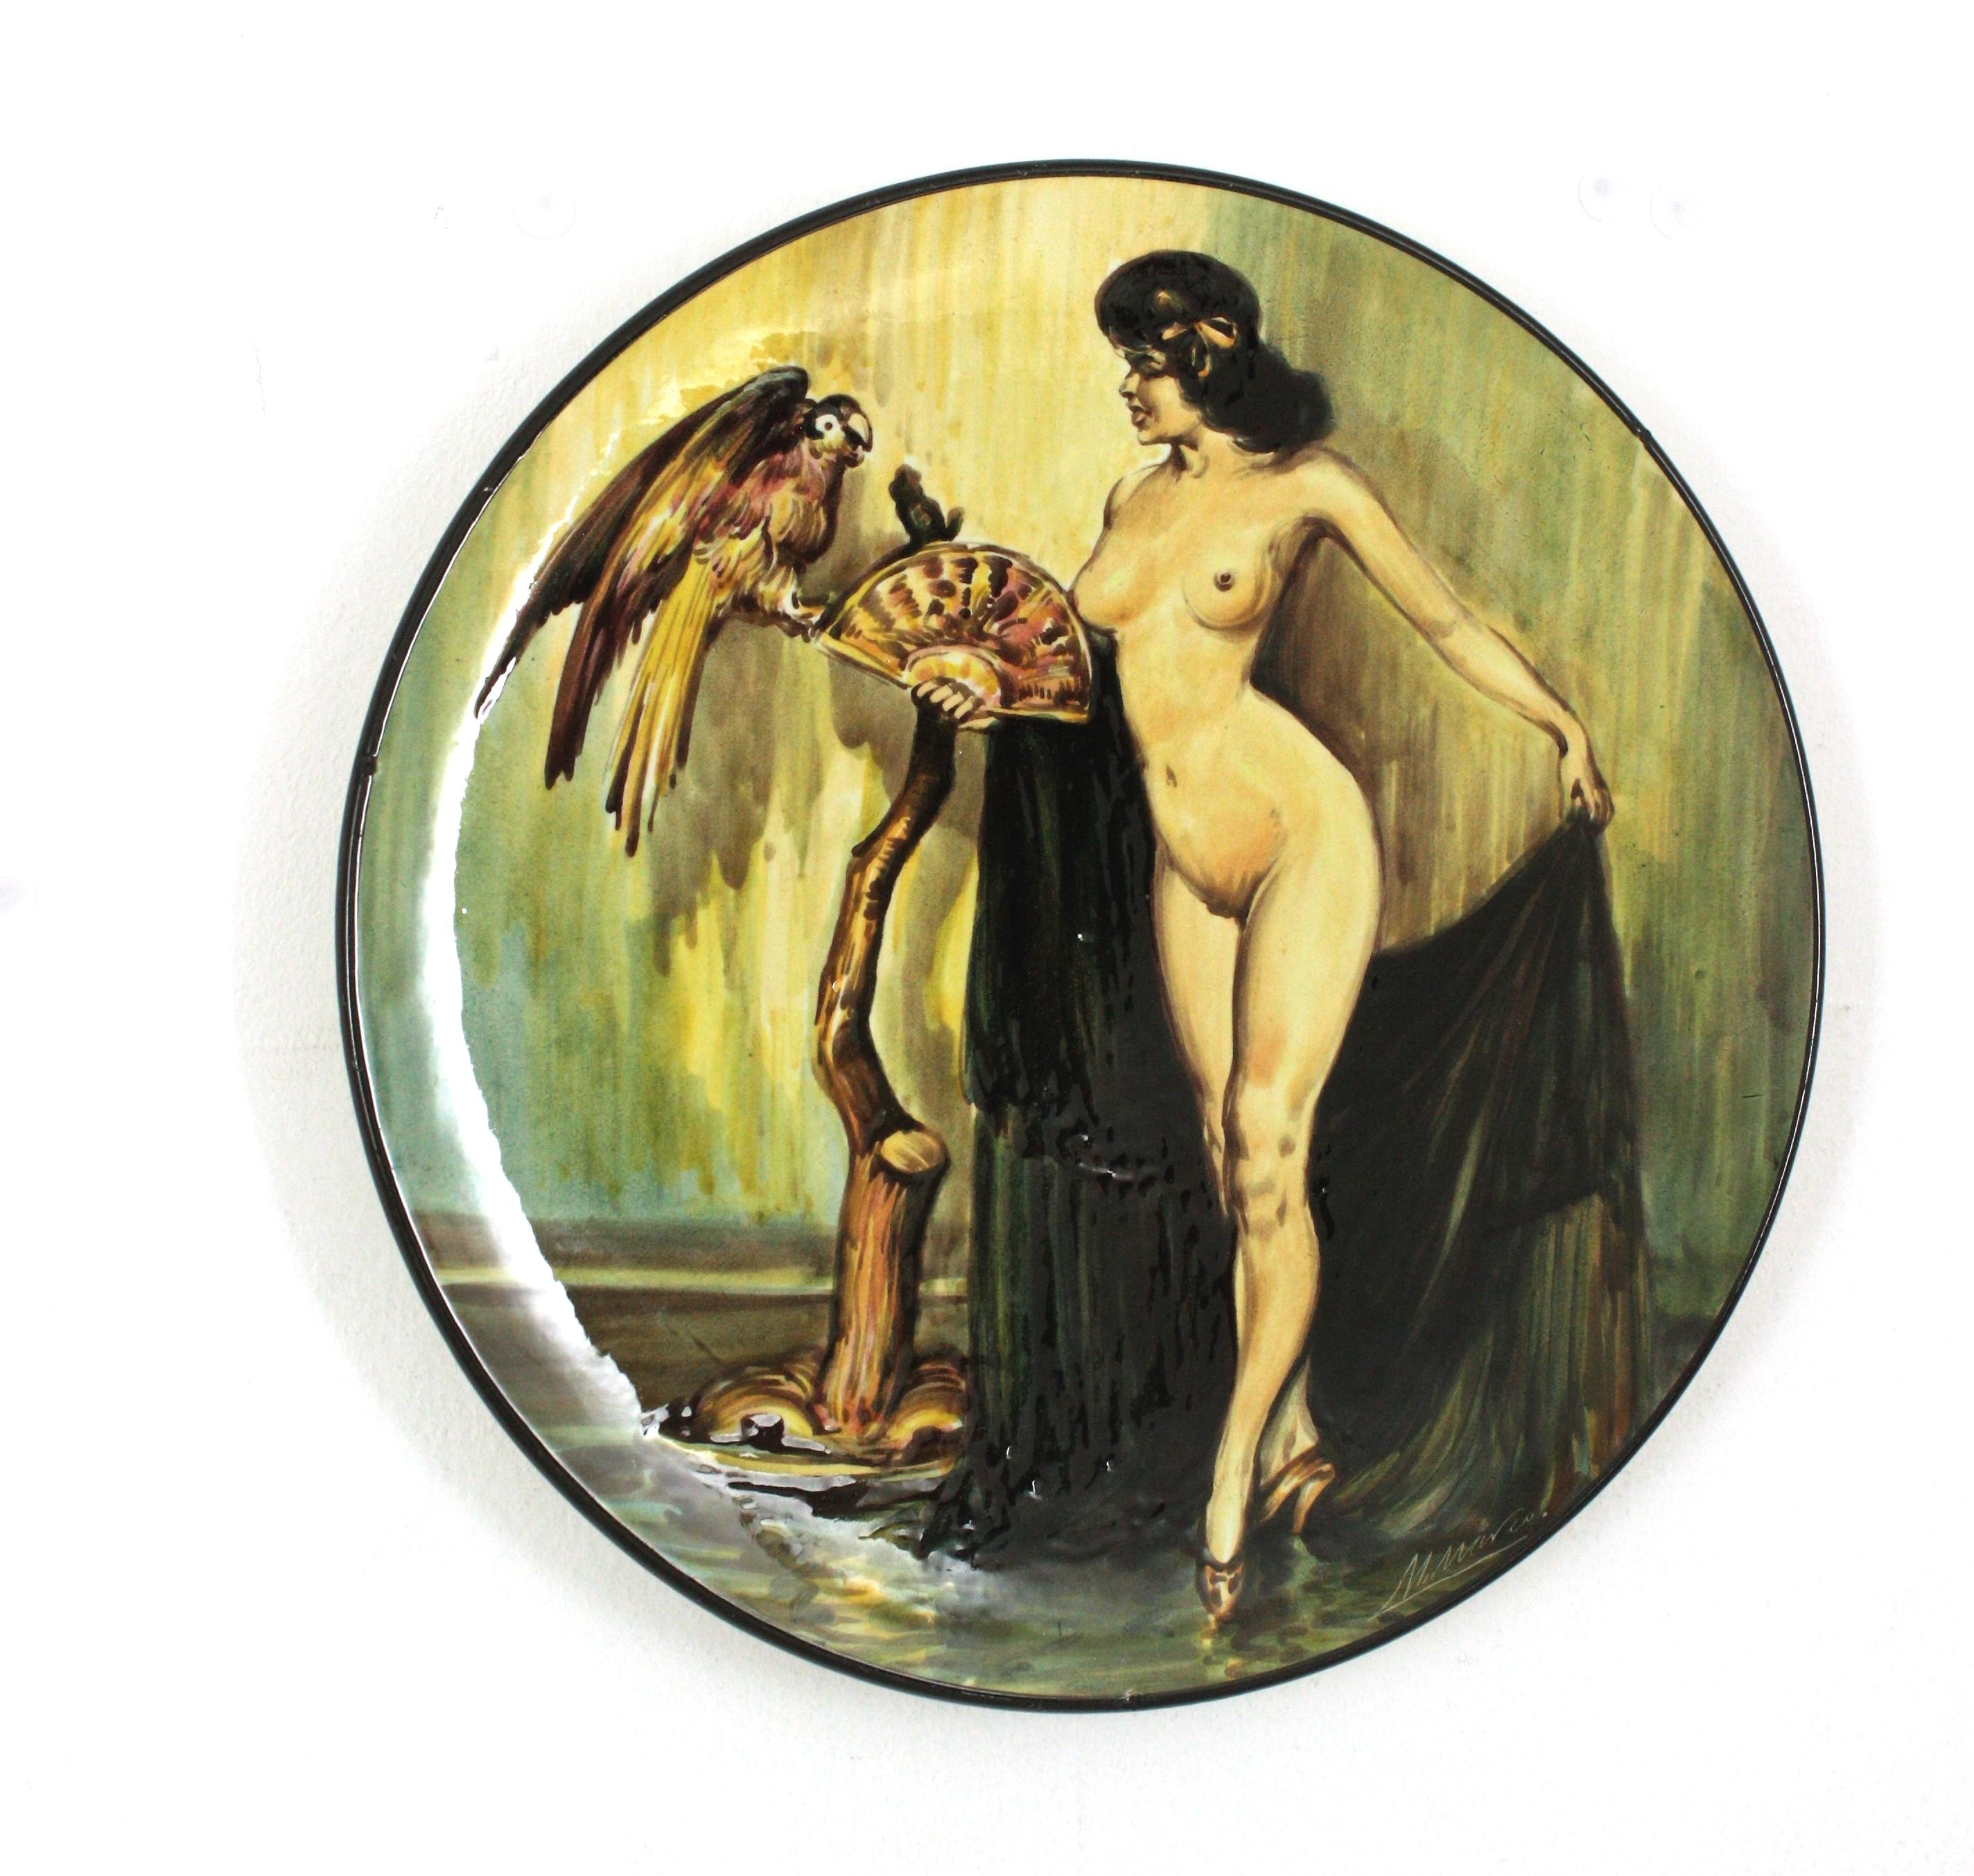 Plaque murale en céramique représentant une femme nue peinte à la main, Espagne, années 1950
Femme nue gitane avec perroquet
Signé M-One en bas à droite
Marqué au dos : 